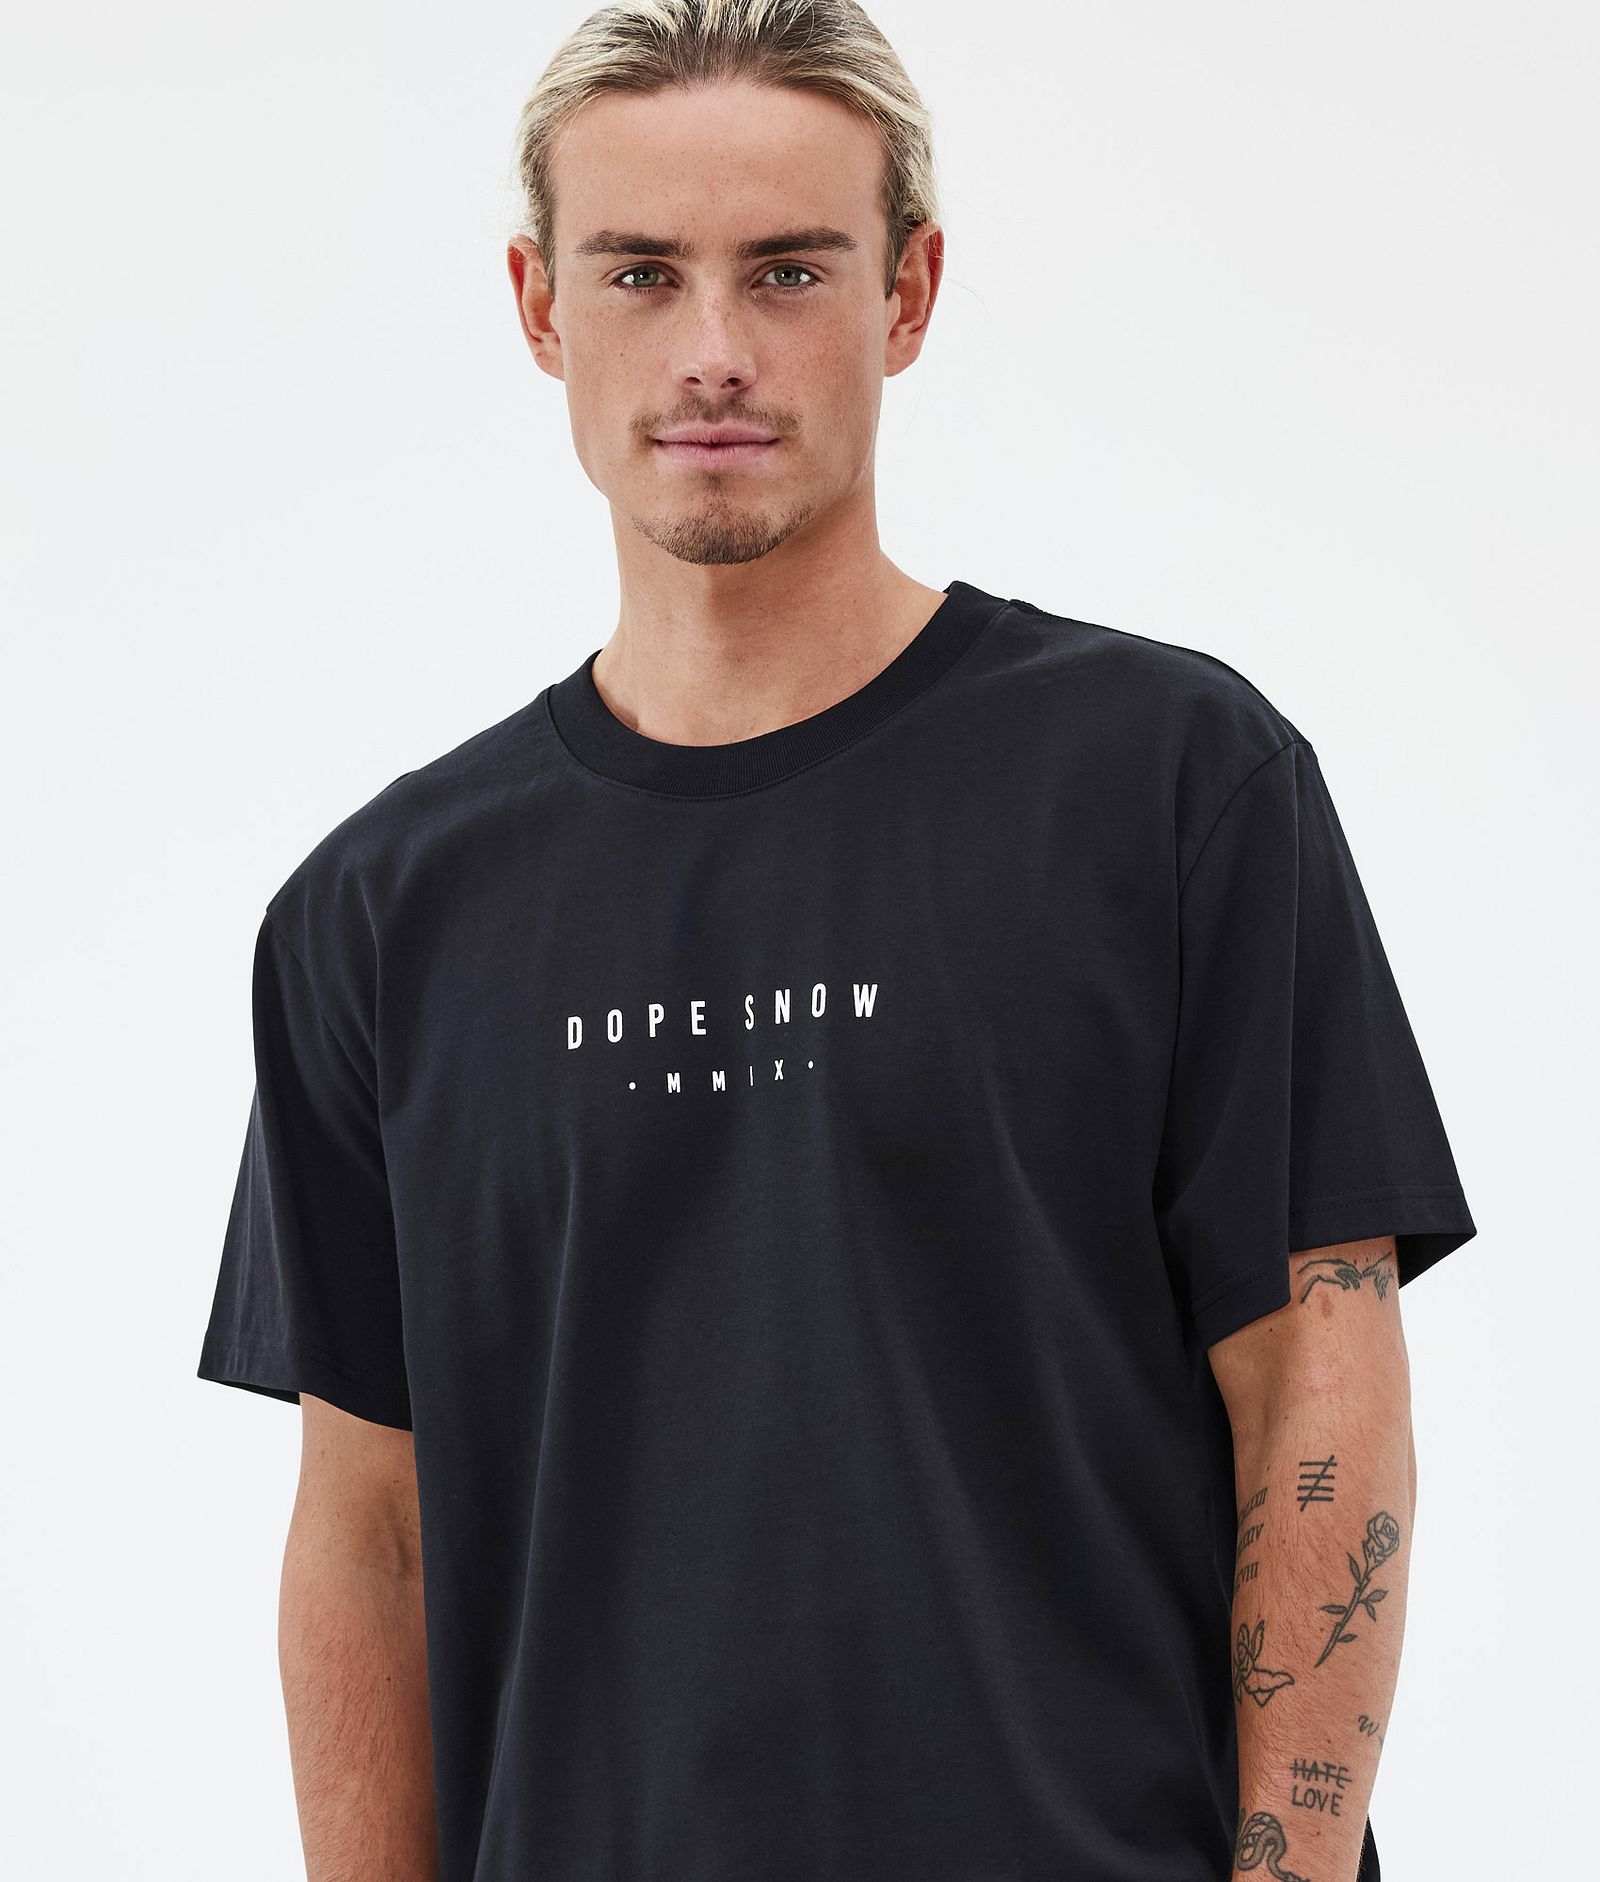 Dope Standard T-shirt Men Silhouette Black | Dopesnow.com